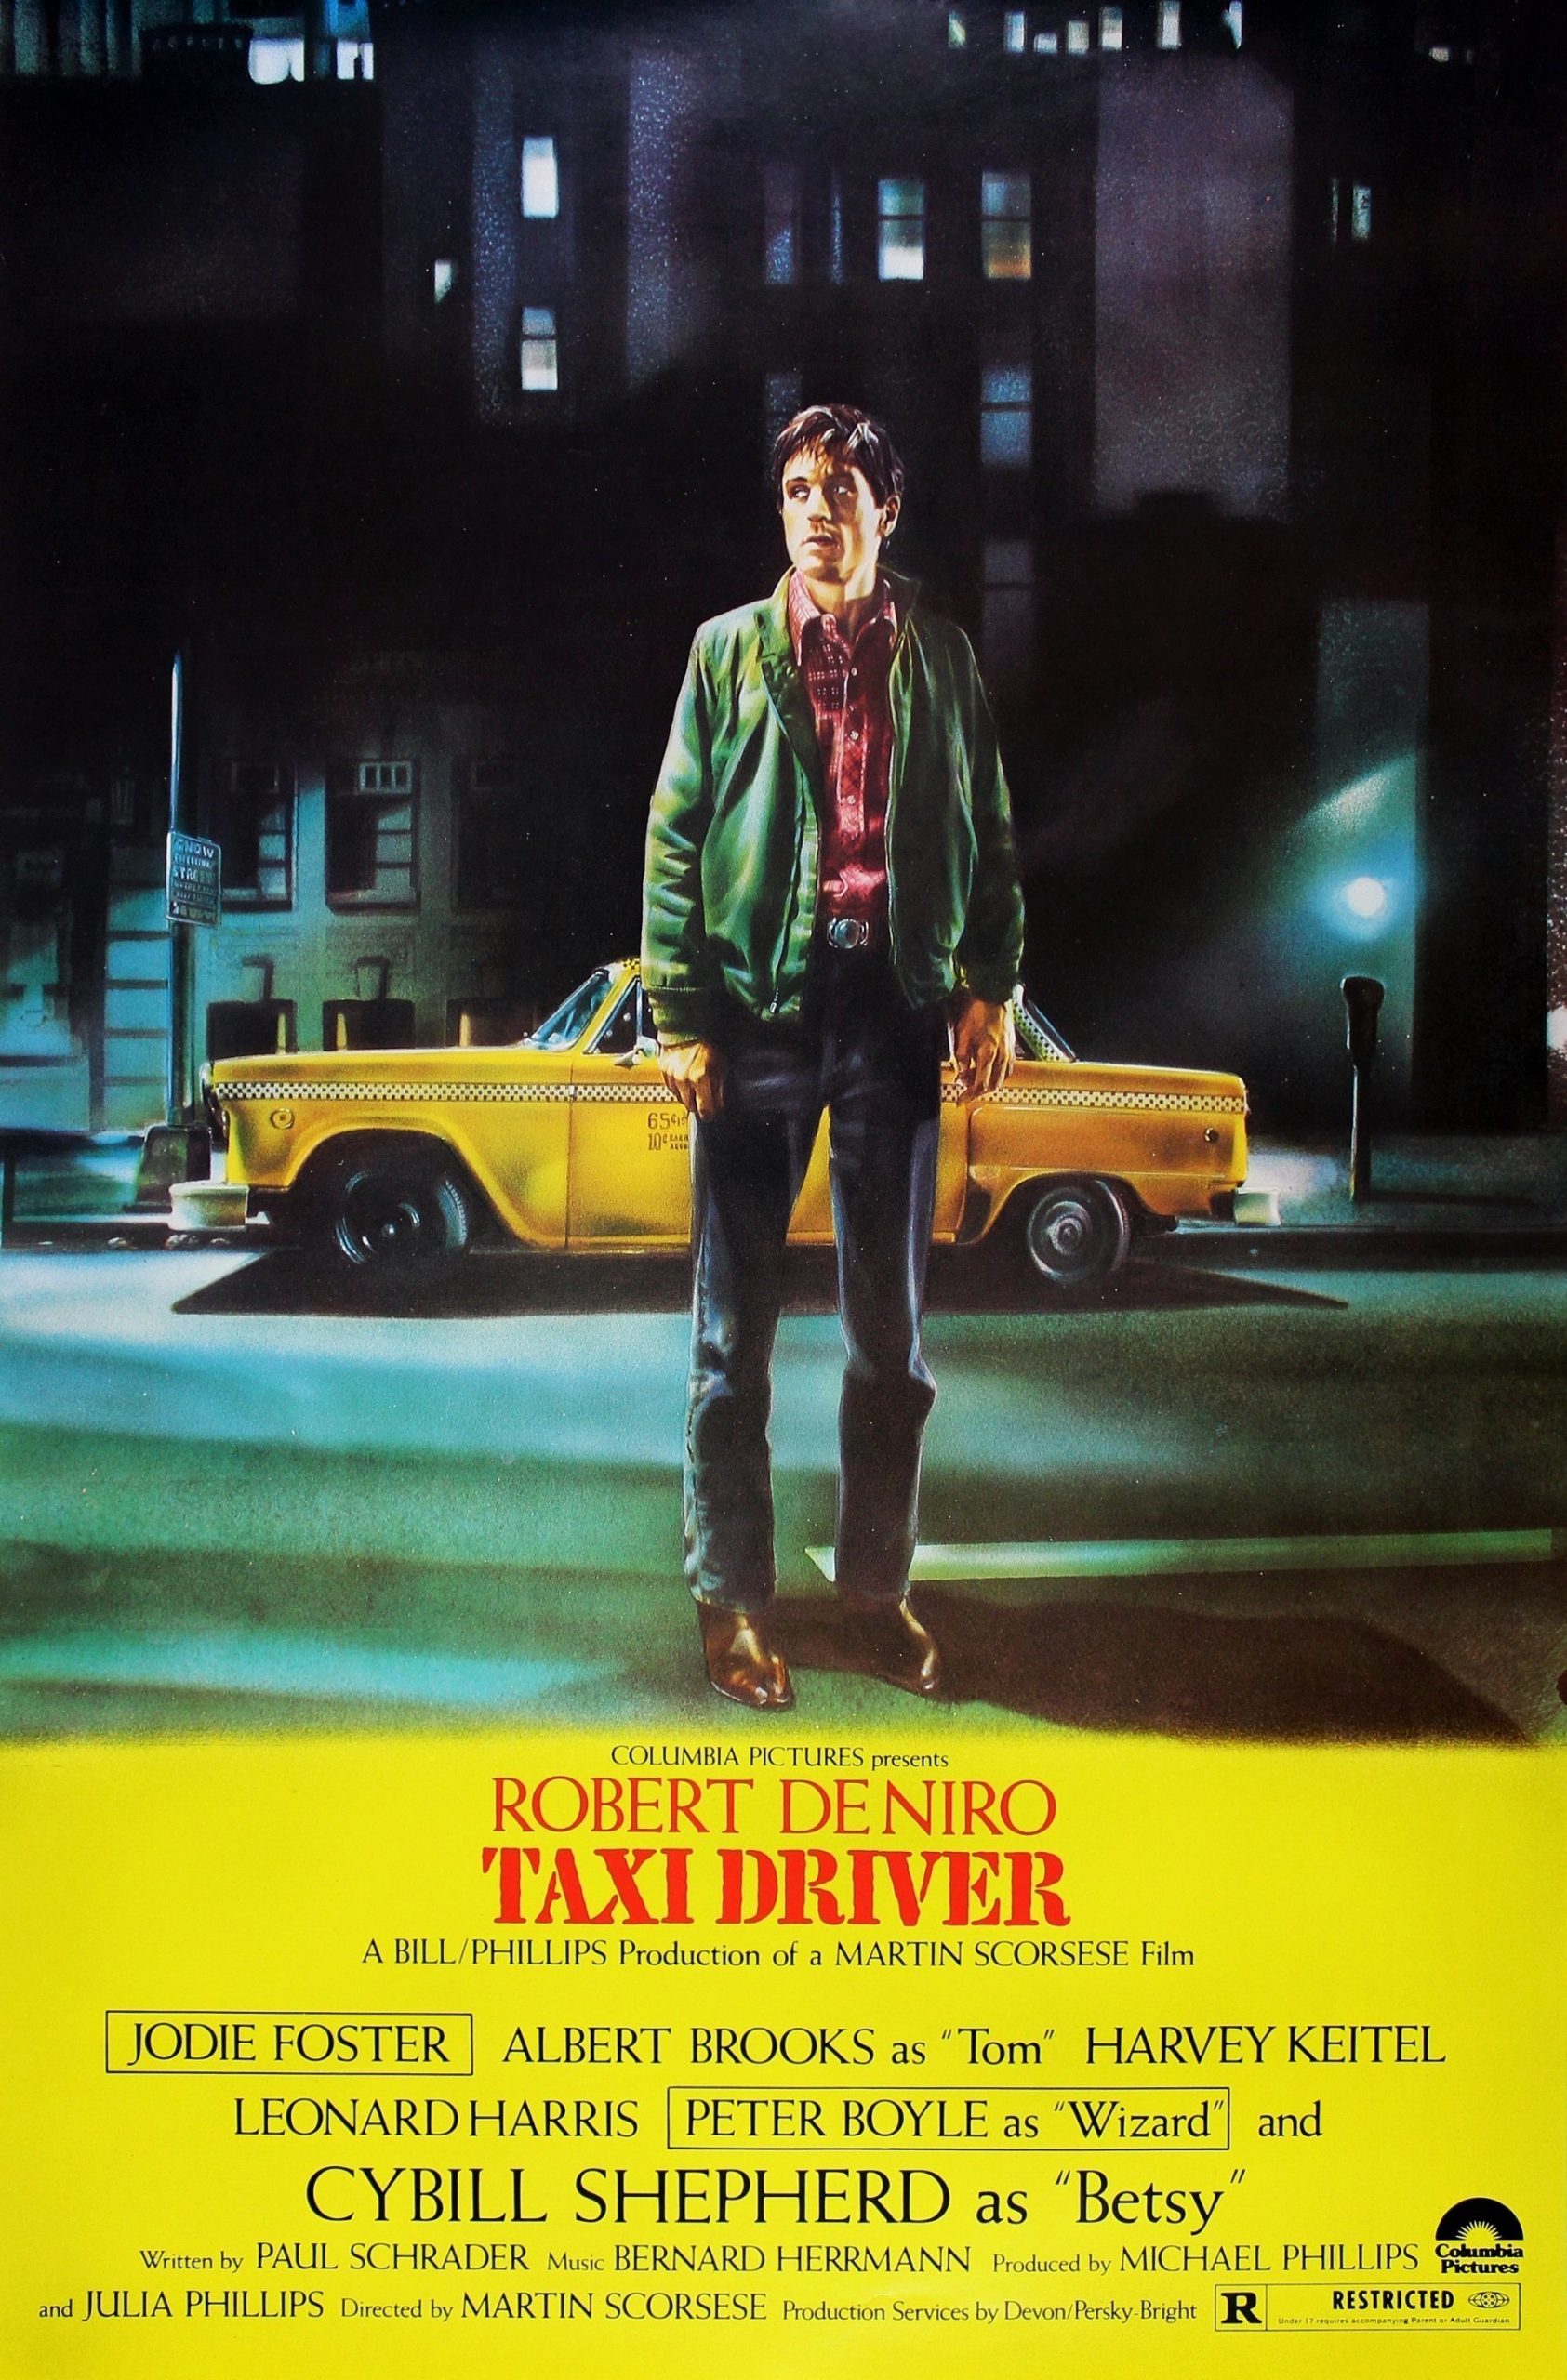 ดูหนังออนไลน์ฟรี Taxi Driver (1976) แท็กซี่มหากาฬ ดูหนังชนโรงฟรี